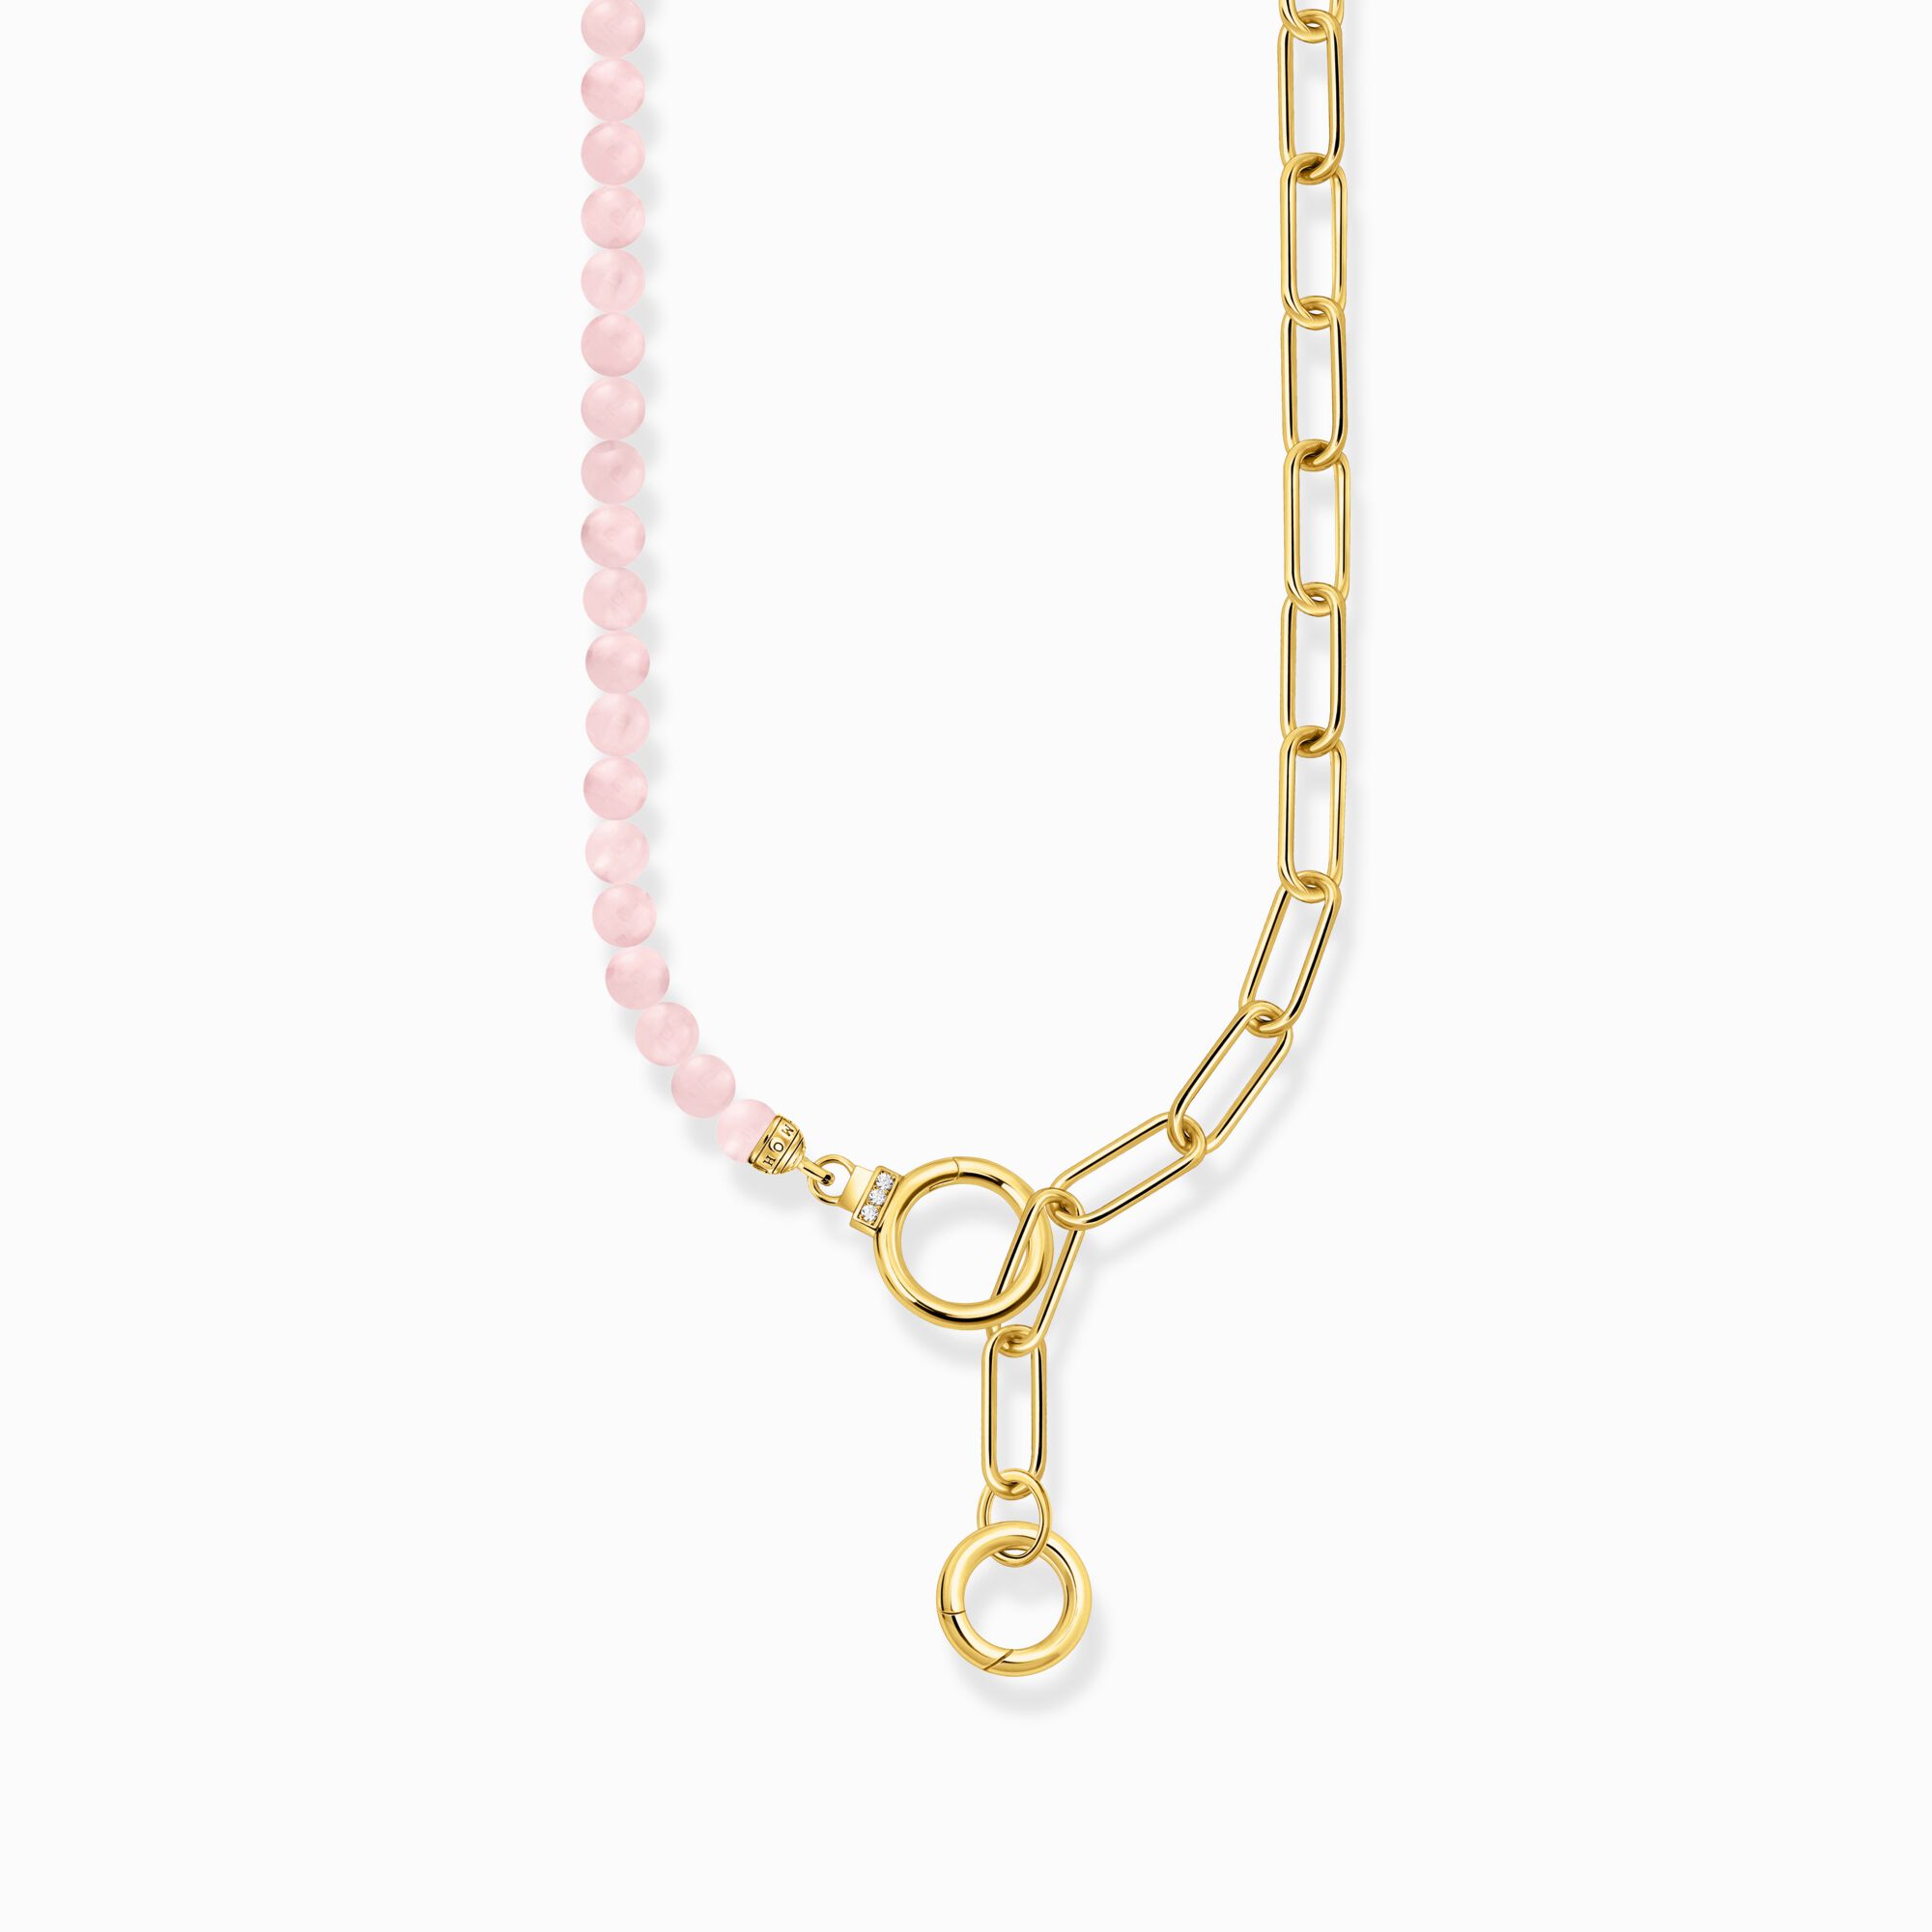 Collier mit Gliederkettenelementen und rosa Beads vergoldet aus der  Kollektion im Online Shop von THOMAS SABO